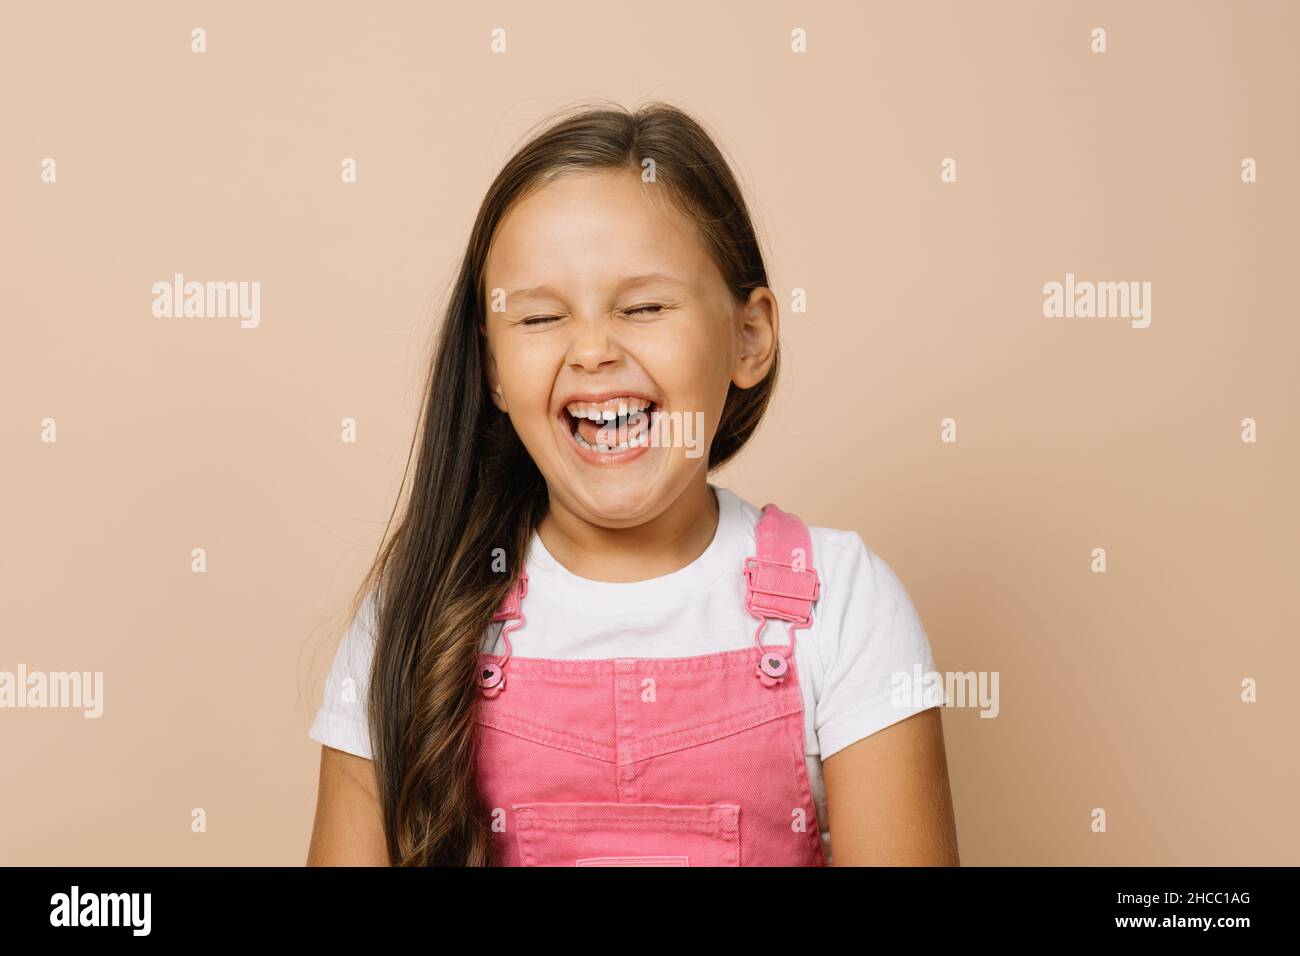 Portrait d'un enfant à la bouche complètement ouverte, yeux fermés et sourire excité avec des dents regardant l'appareil photo portant une combinaison rose vif et un t-shirt blanc Banque D'Images